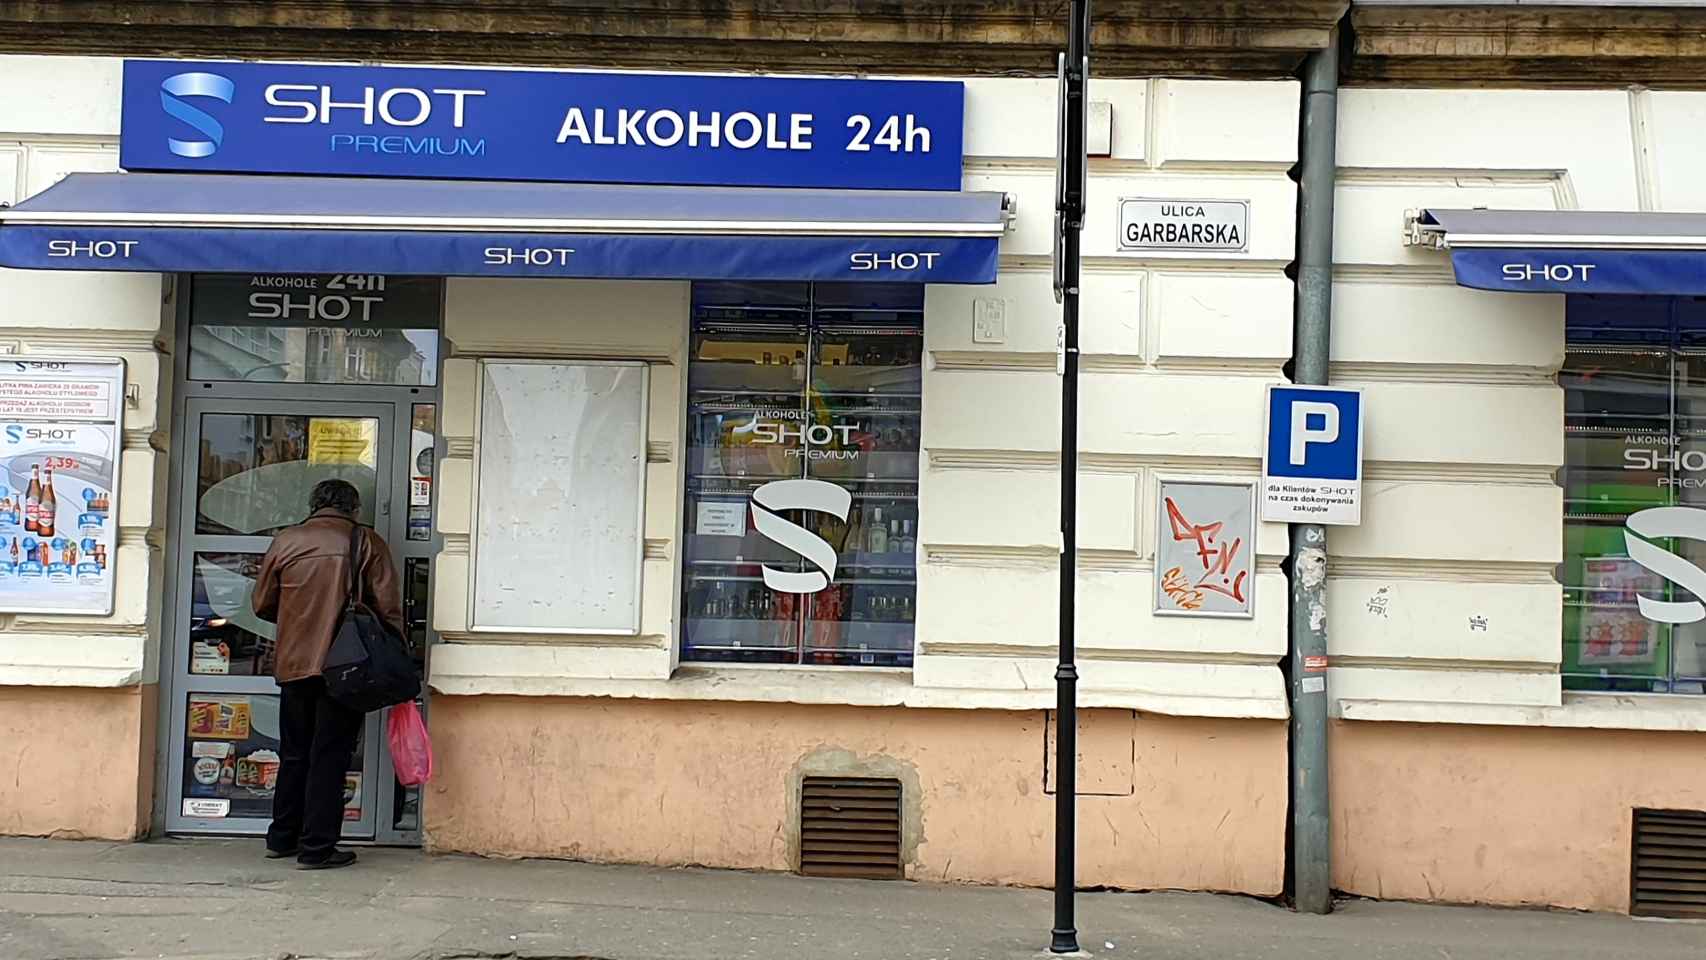 Las tiendas alkohole 24 no cierran sus puertas nunca